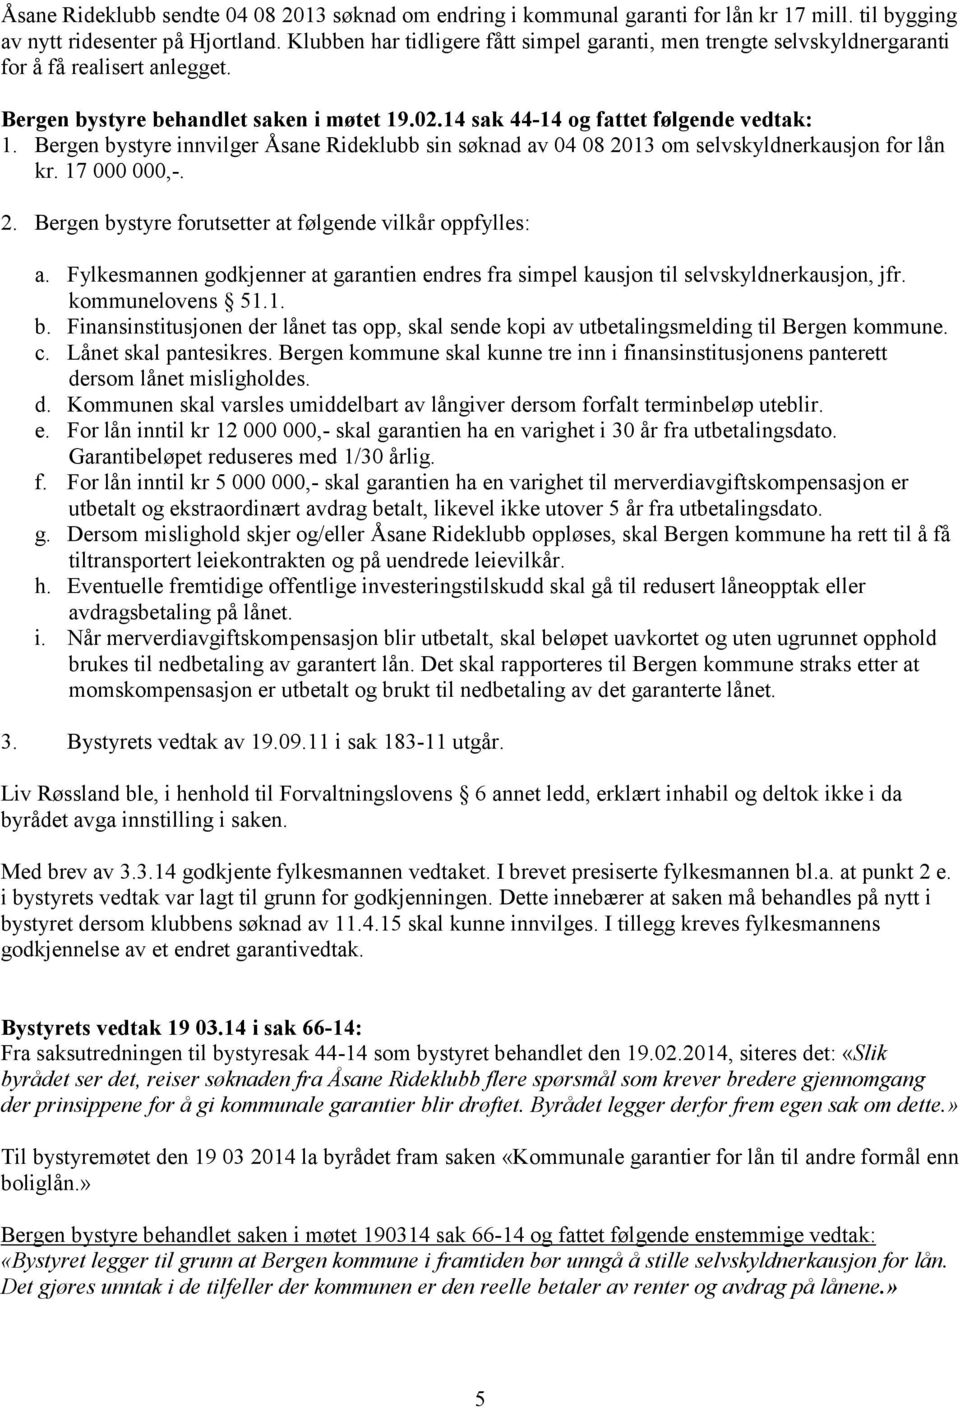 Bergen bystyre innvilger Åsane Rideklubb sin søknad av 04 08 2013 om selvskyldnerkausjon for lån kr. 17 000 000,-. 2. Bergen bystyre forutsetter at følgende vilkår oppfylles: a.